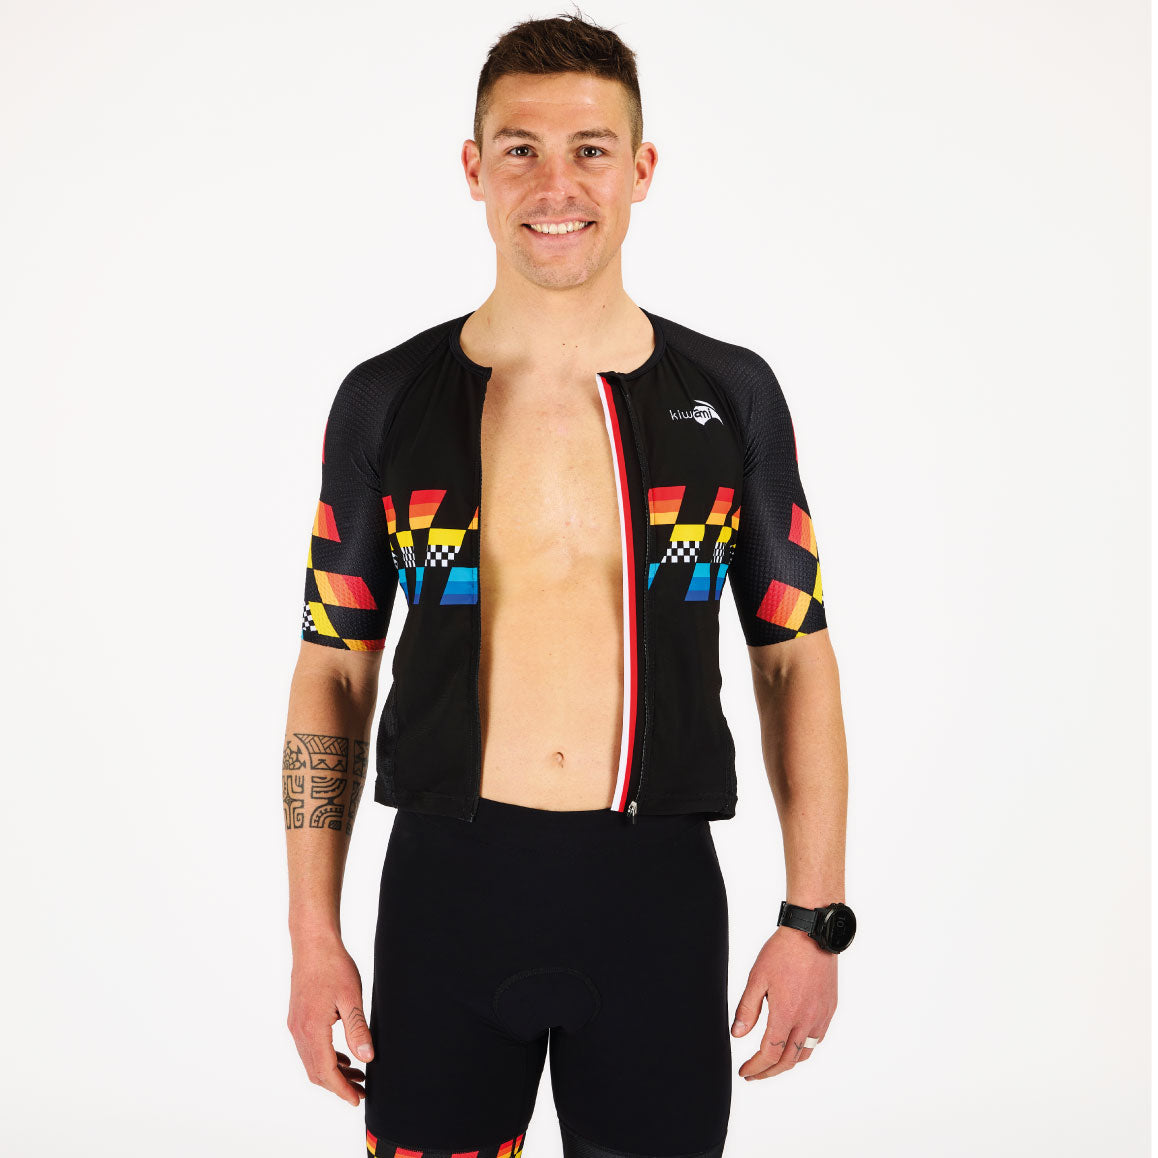 trifonction combinaison de triathlon homme longue distance avec poches zip intégral fabrication française Kiwami Sports